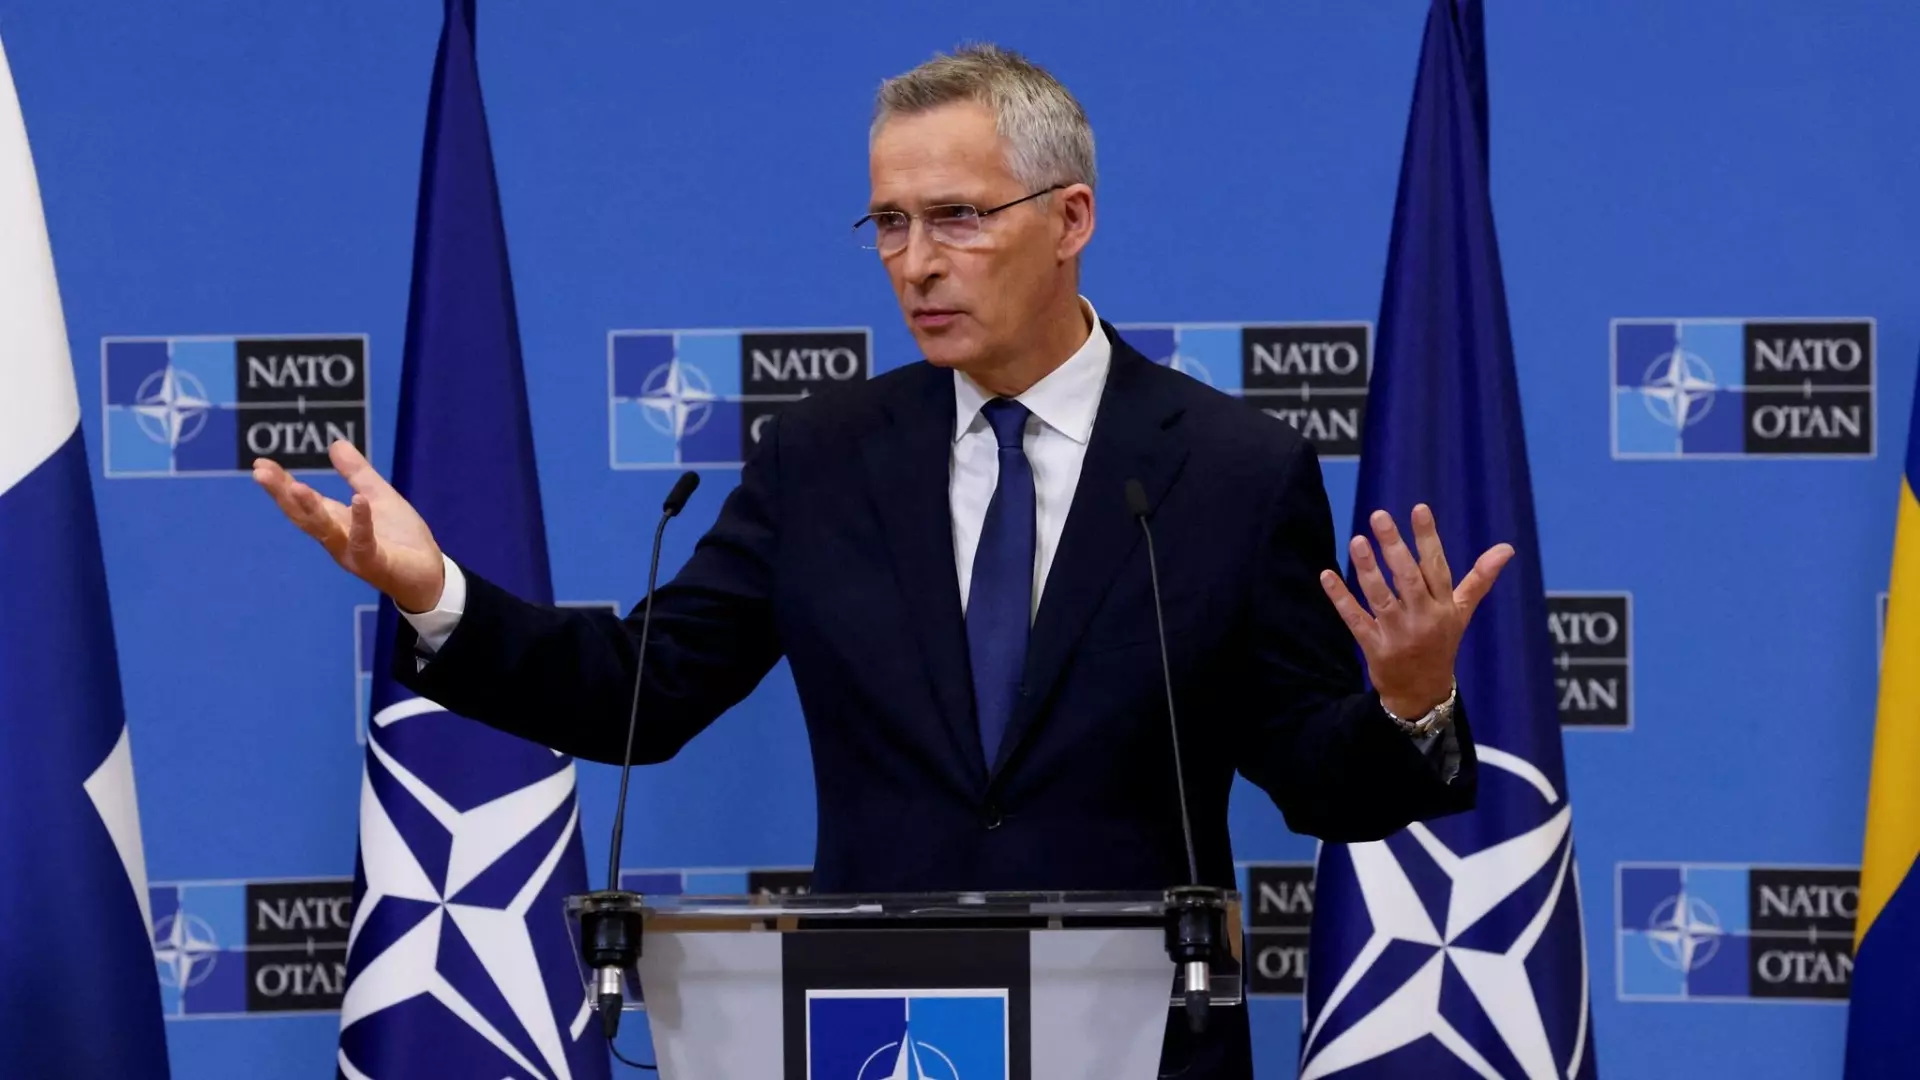 К 75-летию НАТО ее генеральный секретарь озвучил новые инициативы